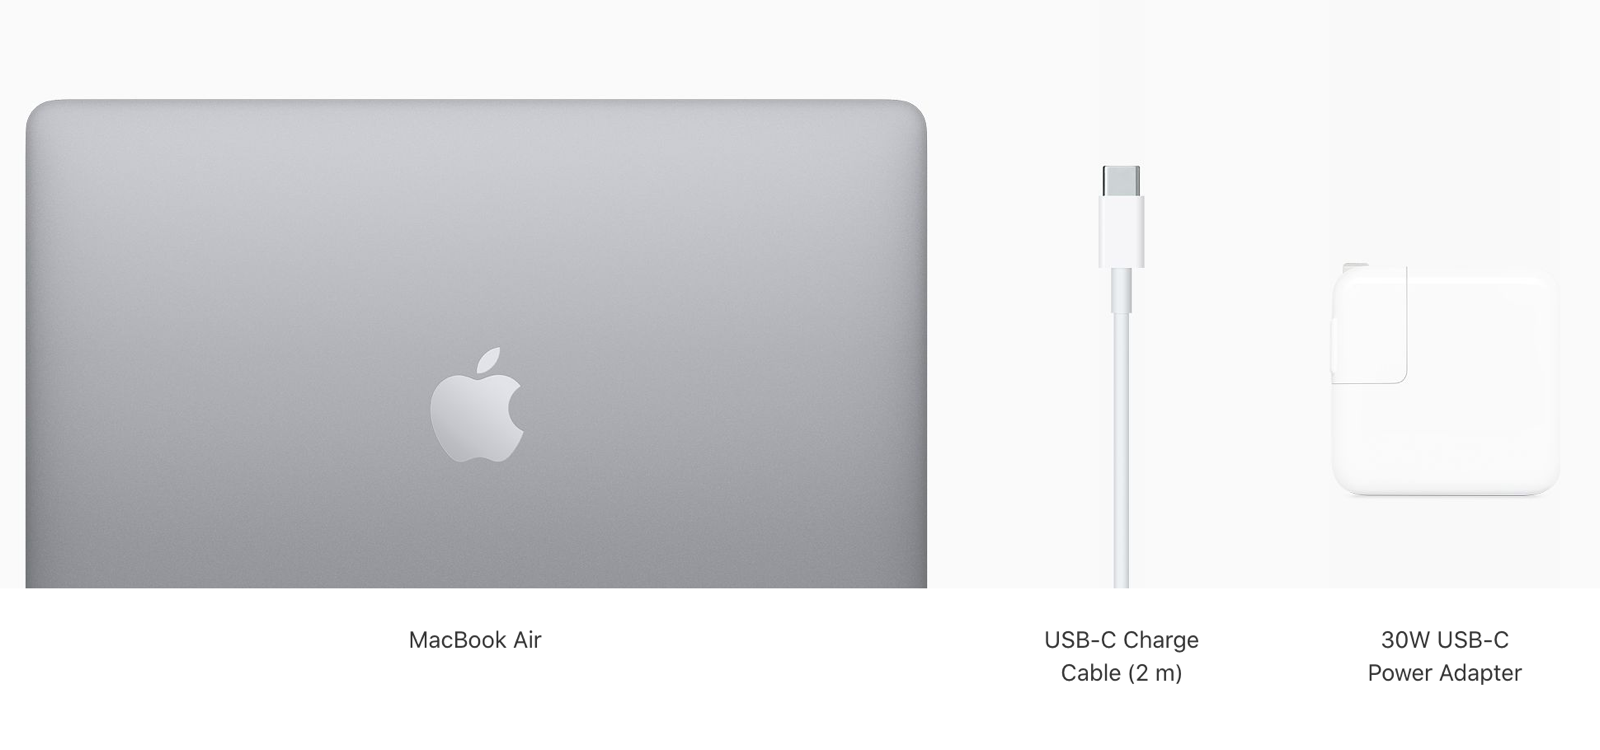 MacBook Air 13 inch 2020 256GB MWTK2 Silver